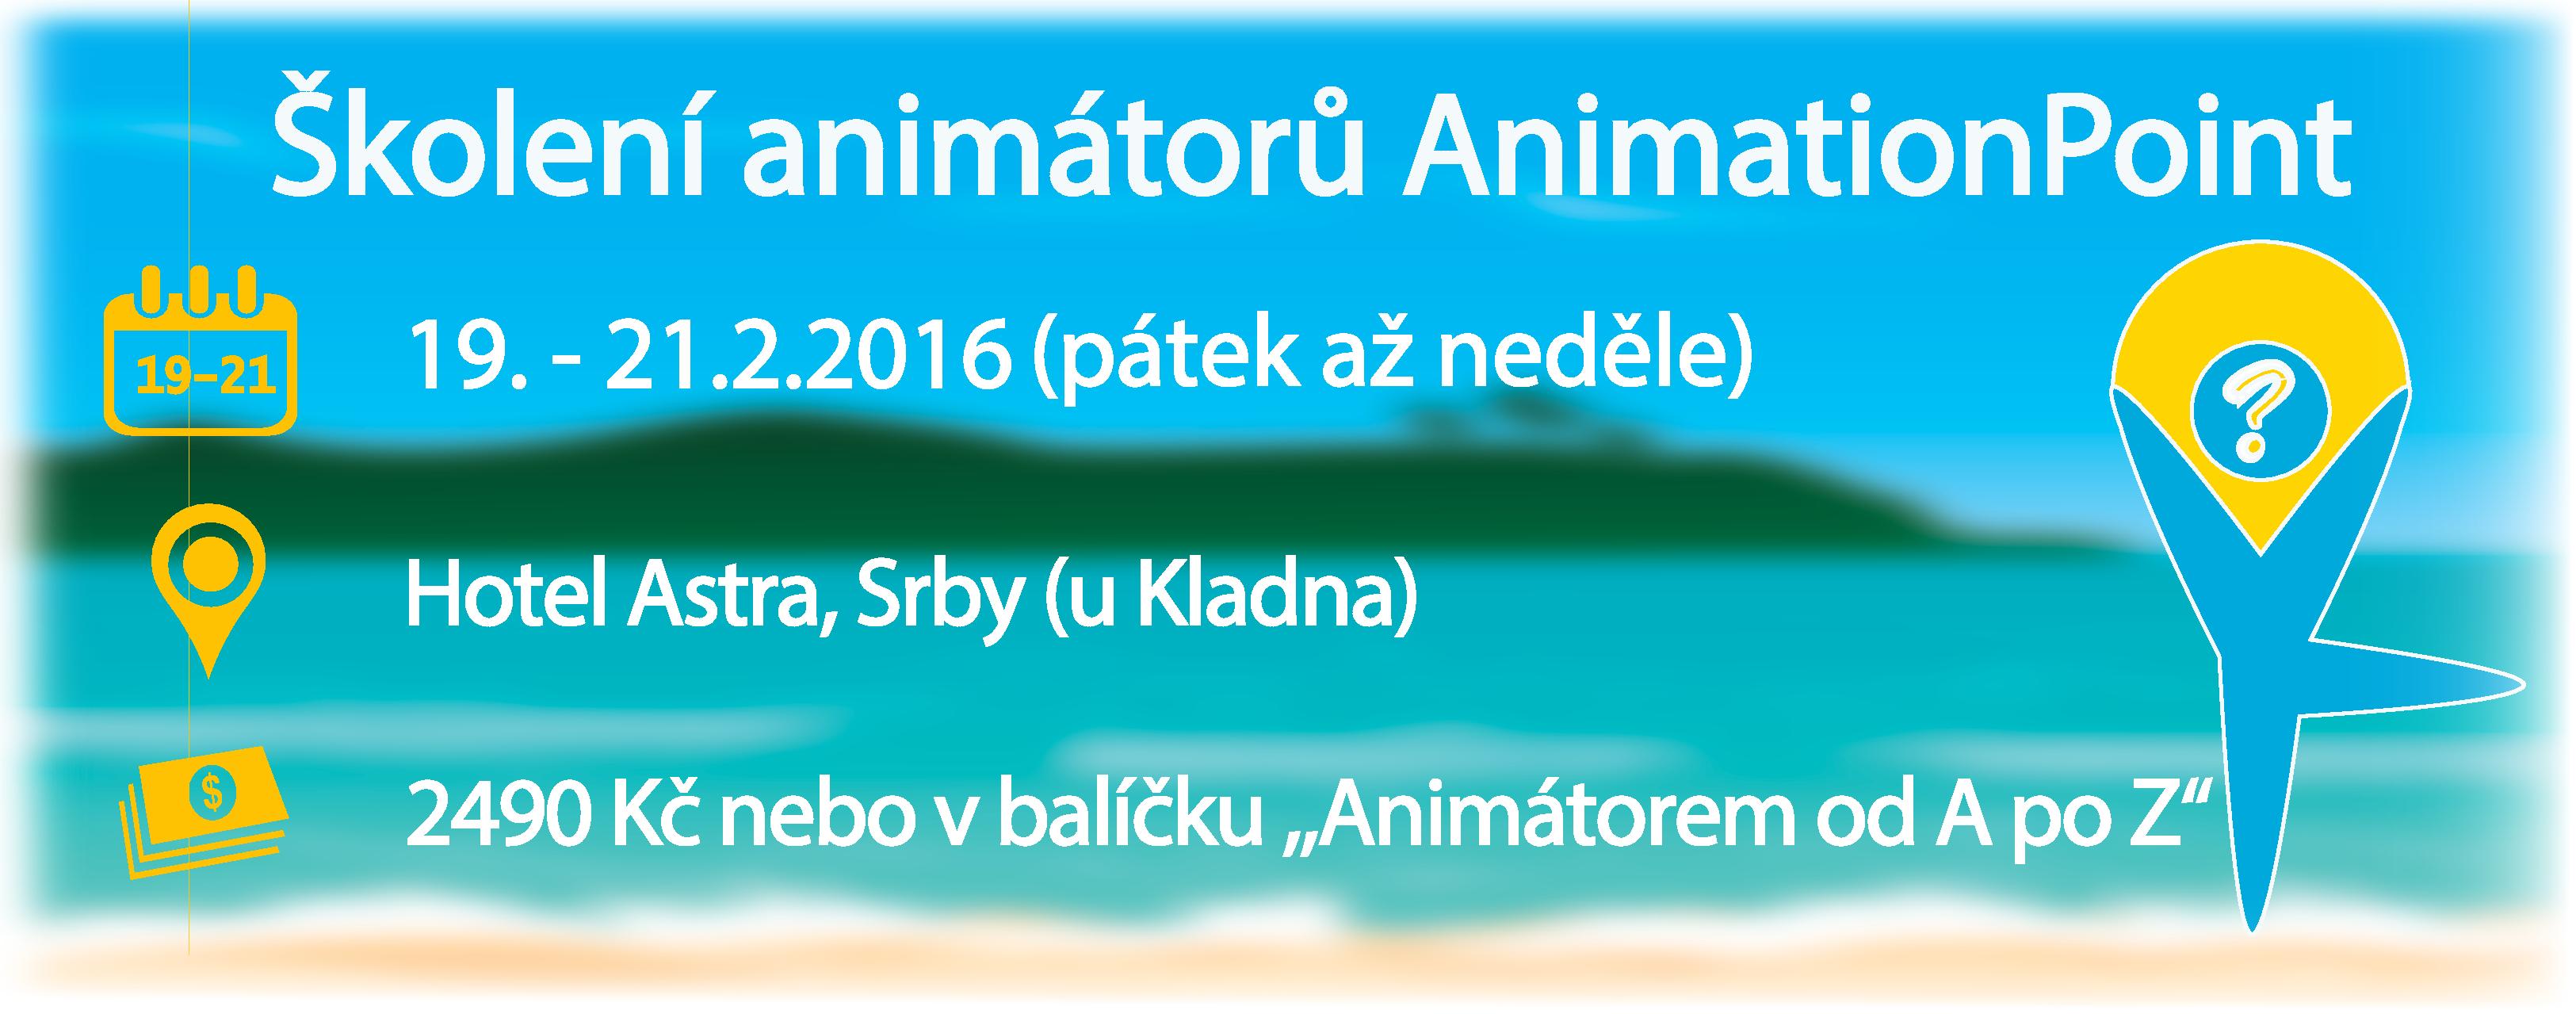 Školení animátorů AnimationPoint ÚNOR 2016